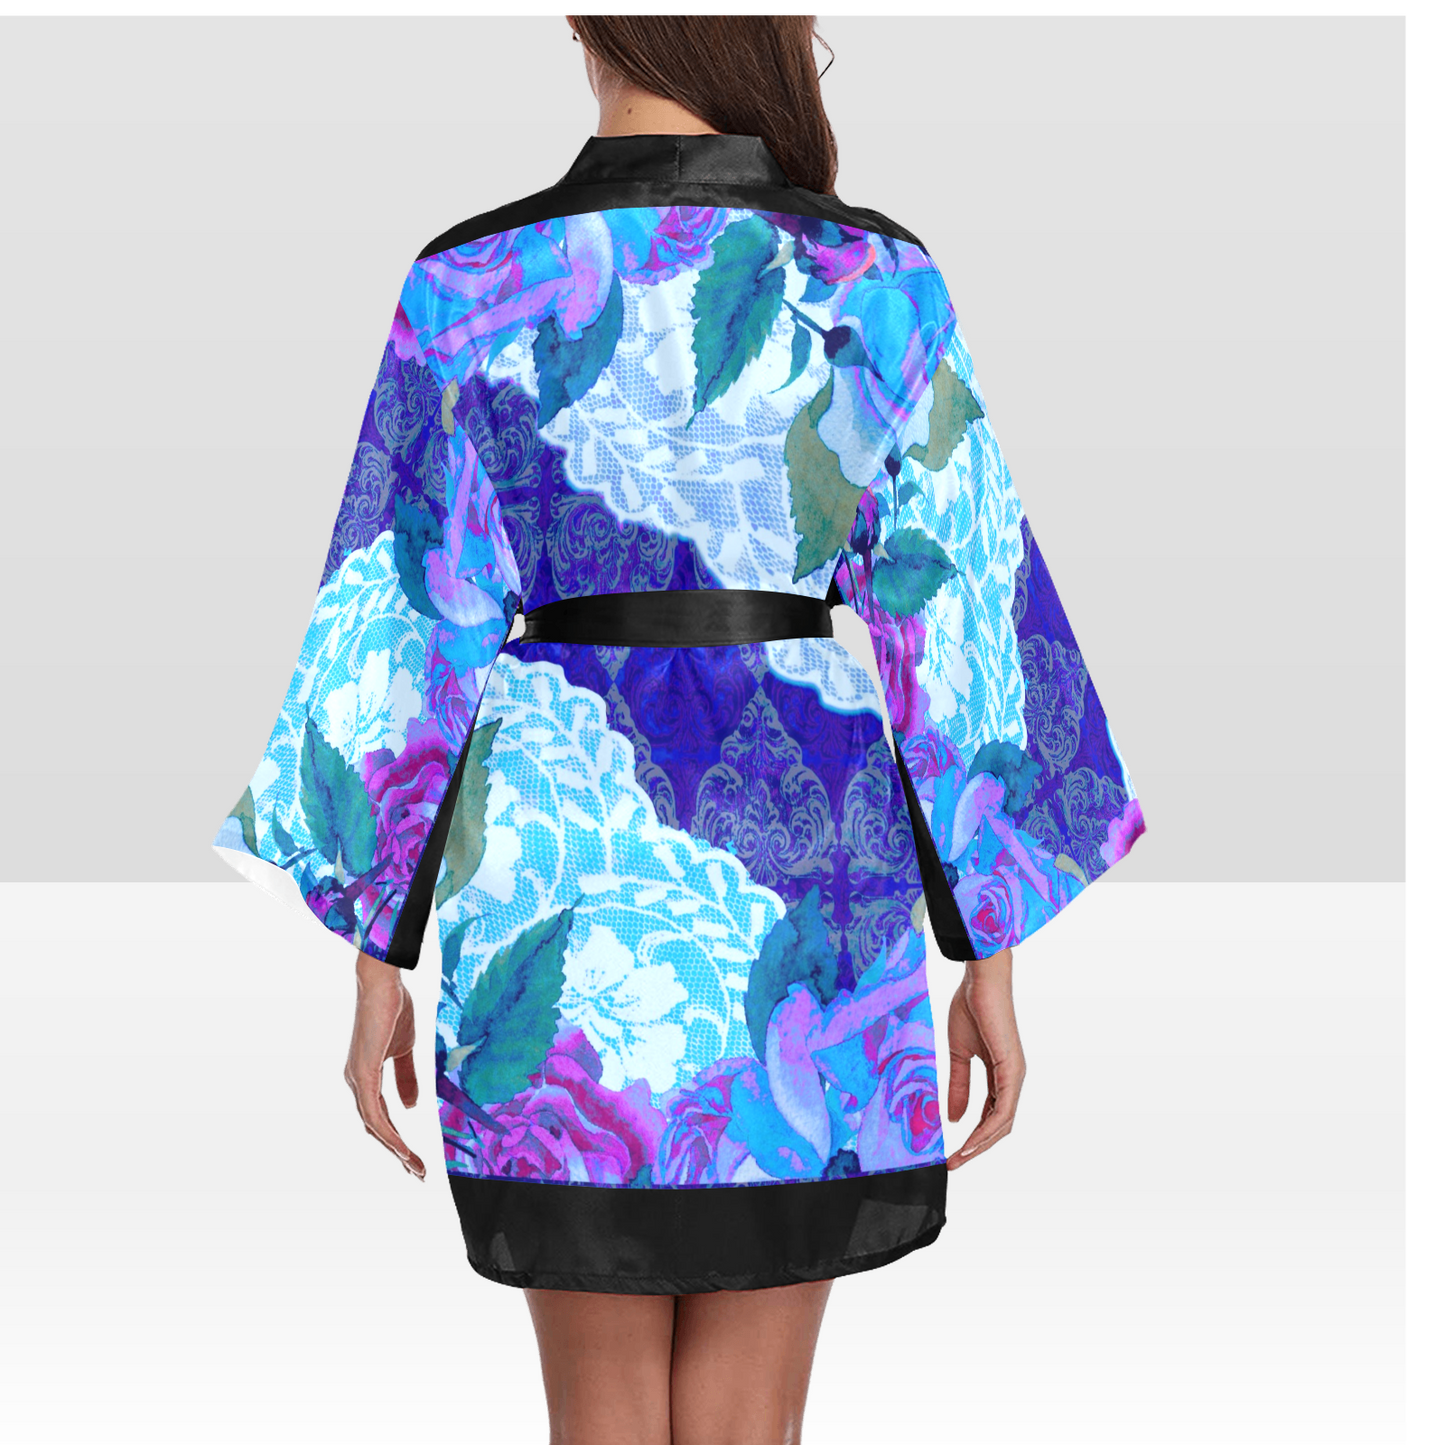 Victorian Lace Kimono Robe, Black or White Trim, Sizes XS to 2XL, Design 20